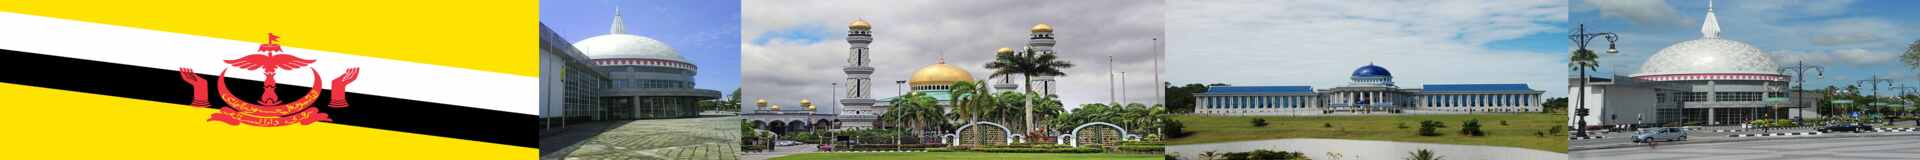 Global Brunei Dredging Works Tenders